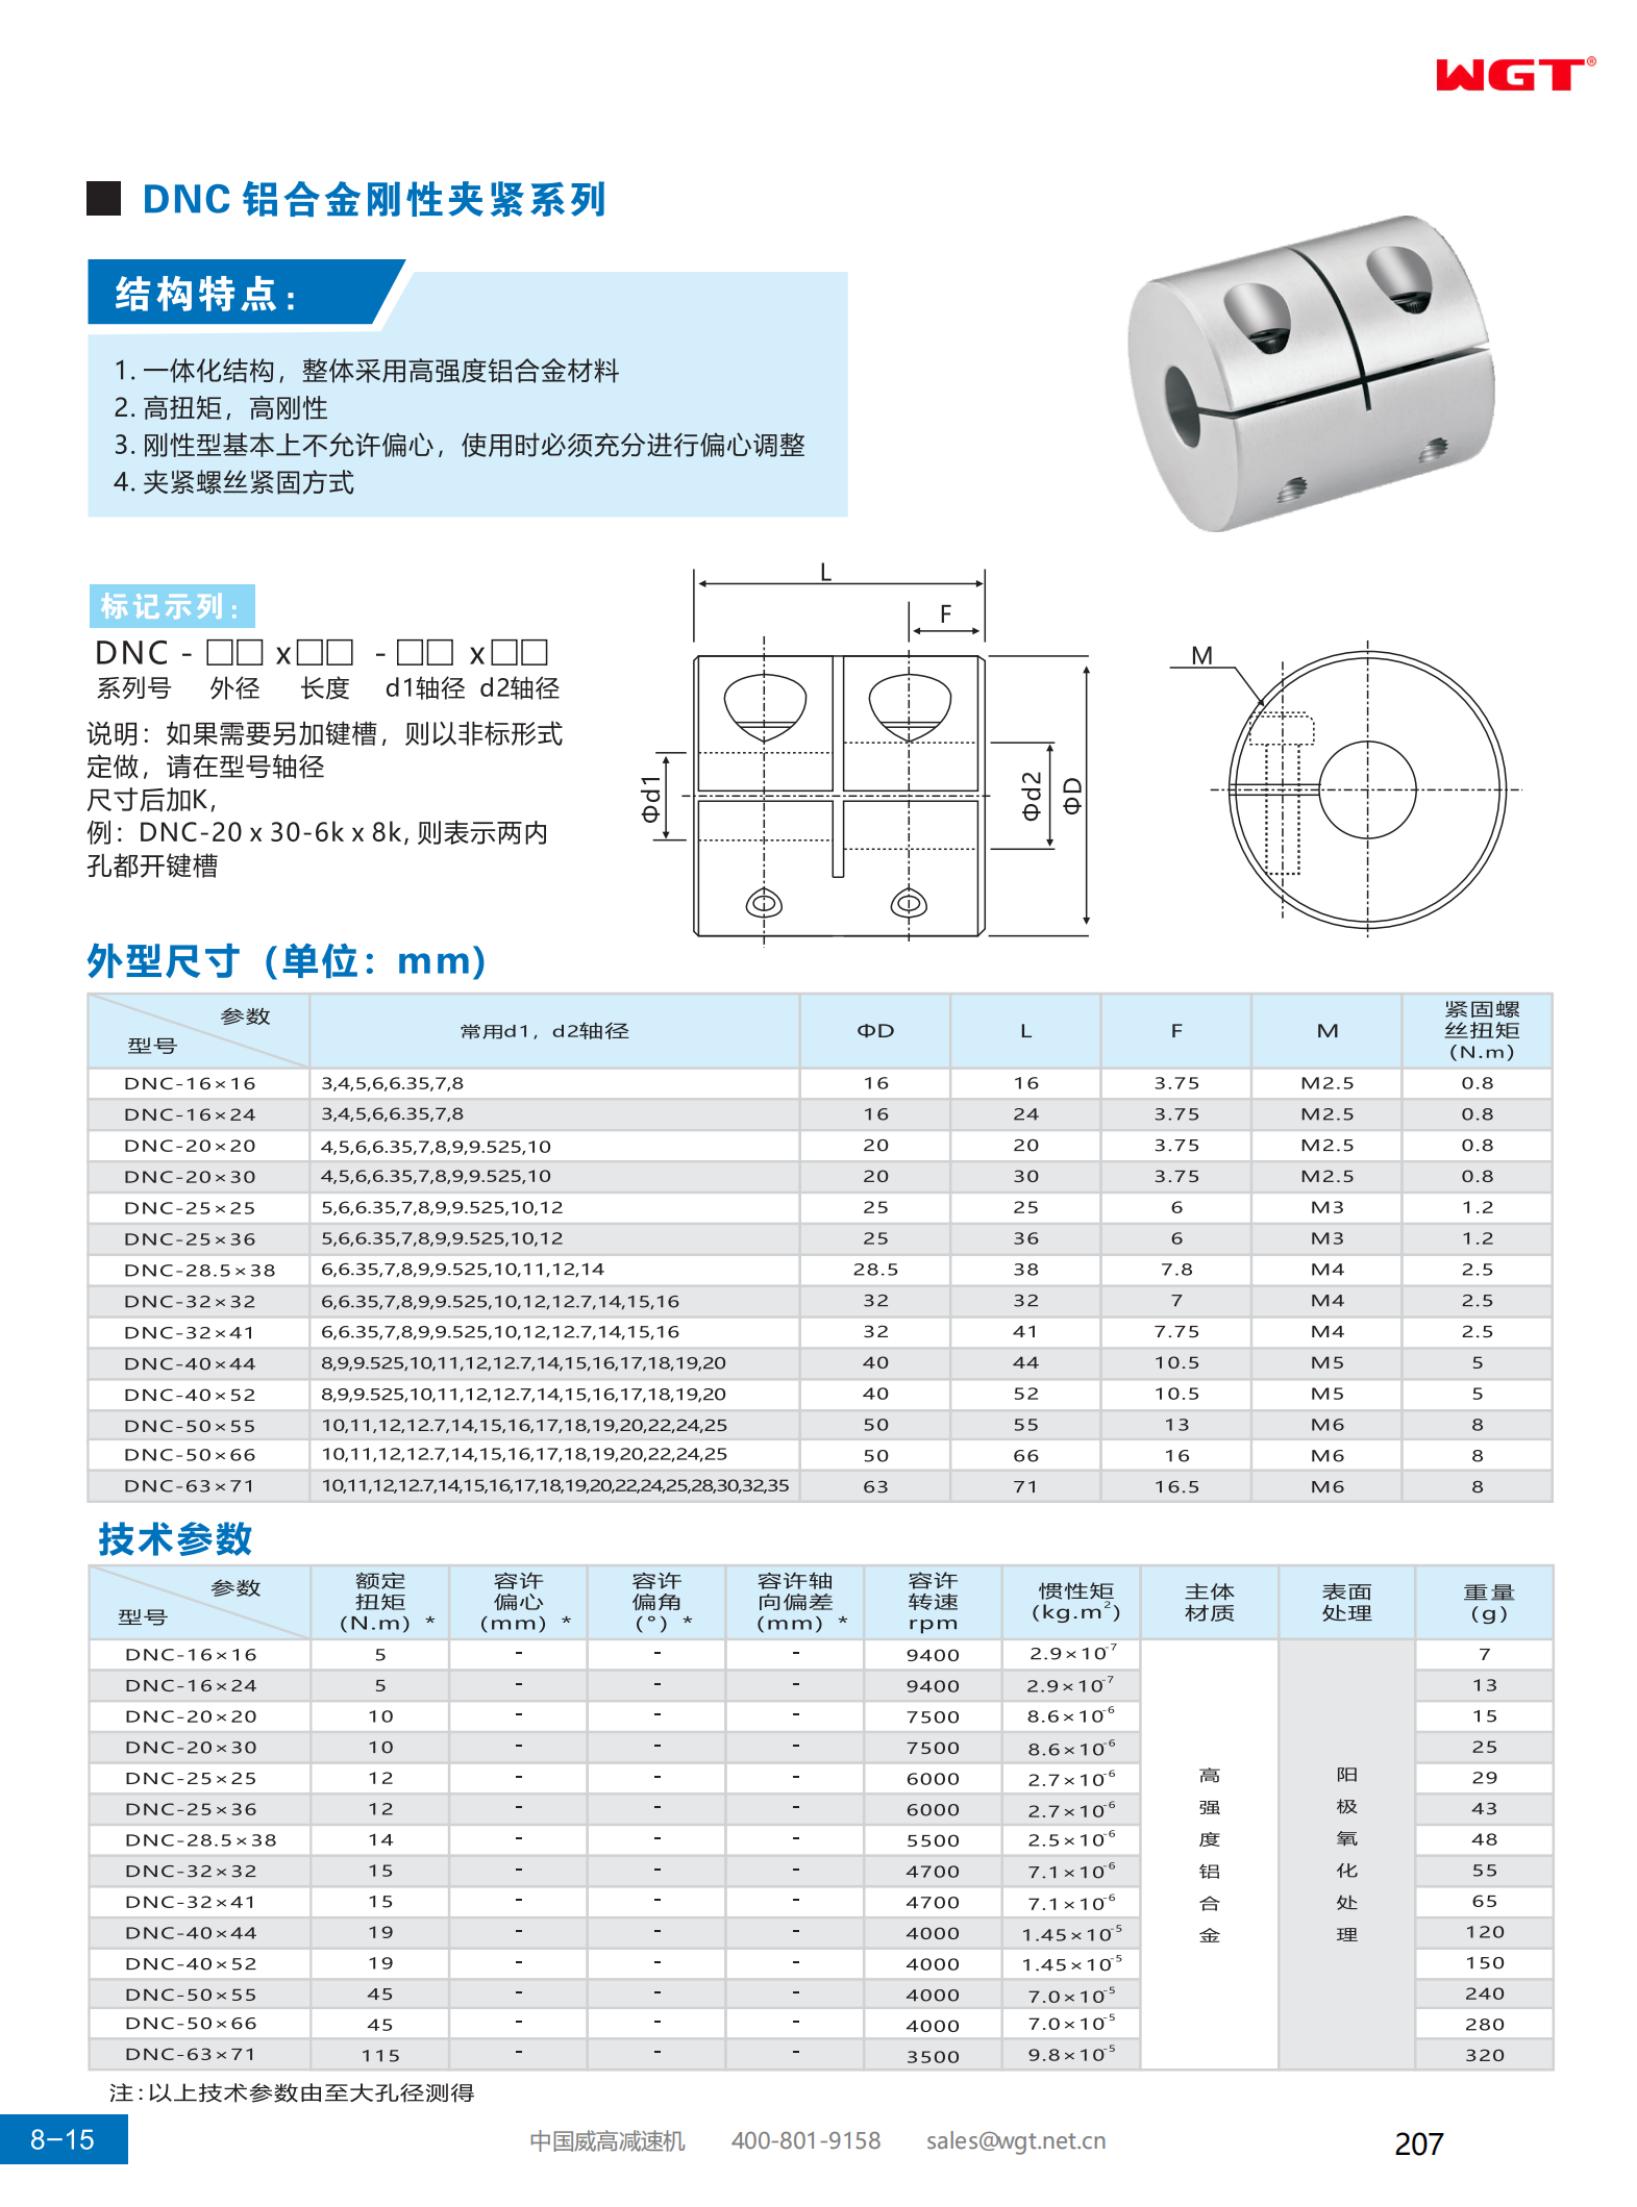 DNC aluminum alloy rigid clamping series